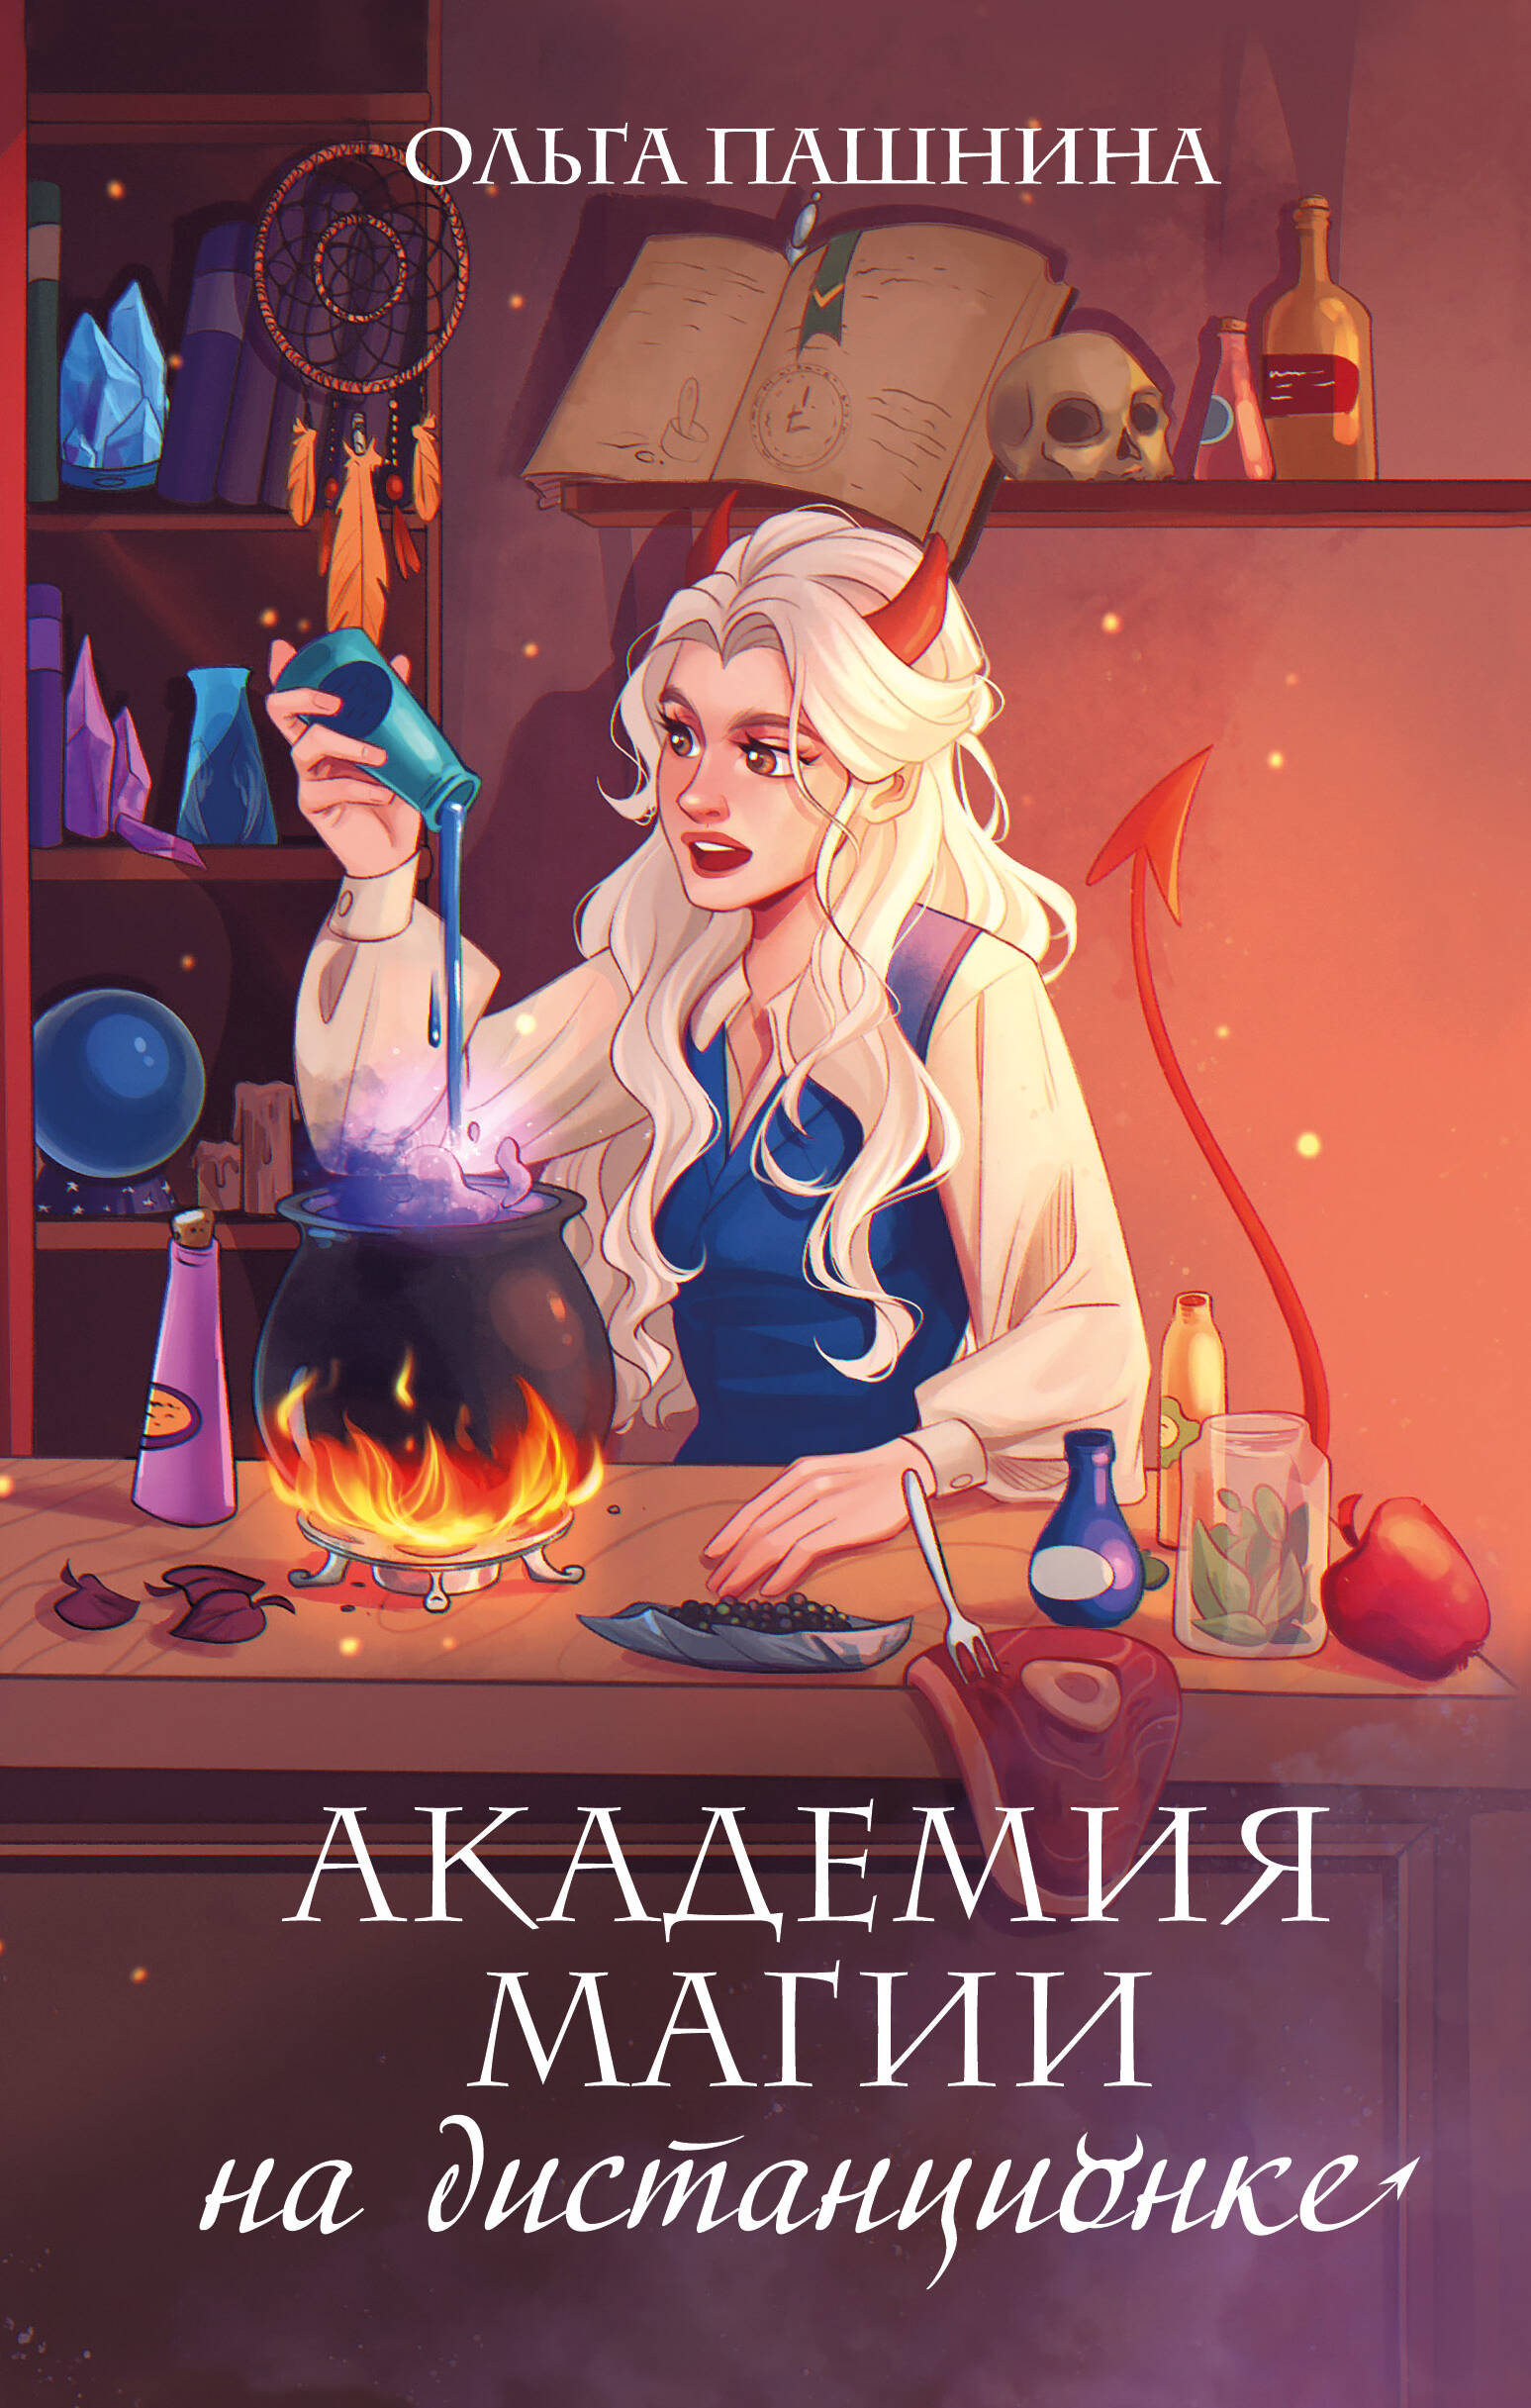 Пашнина Ольга Олеговна - Академия магии на дистанционке